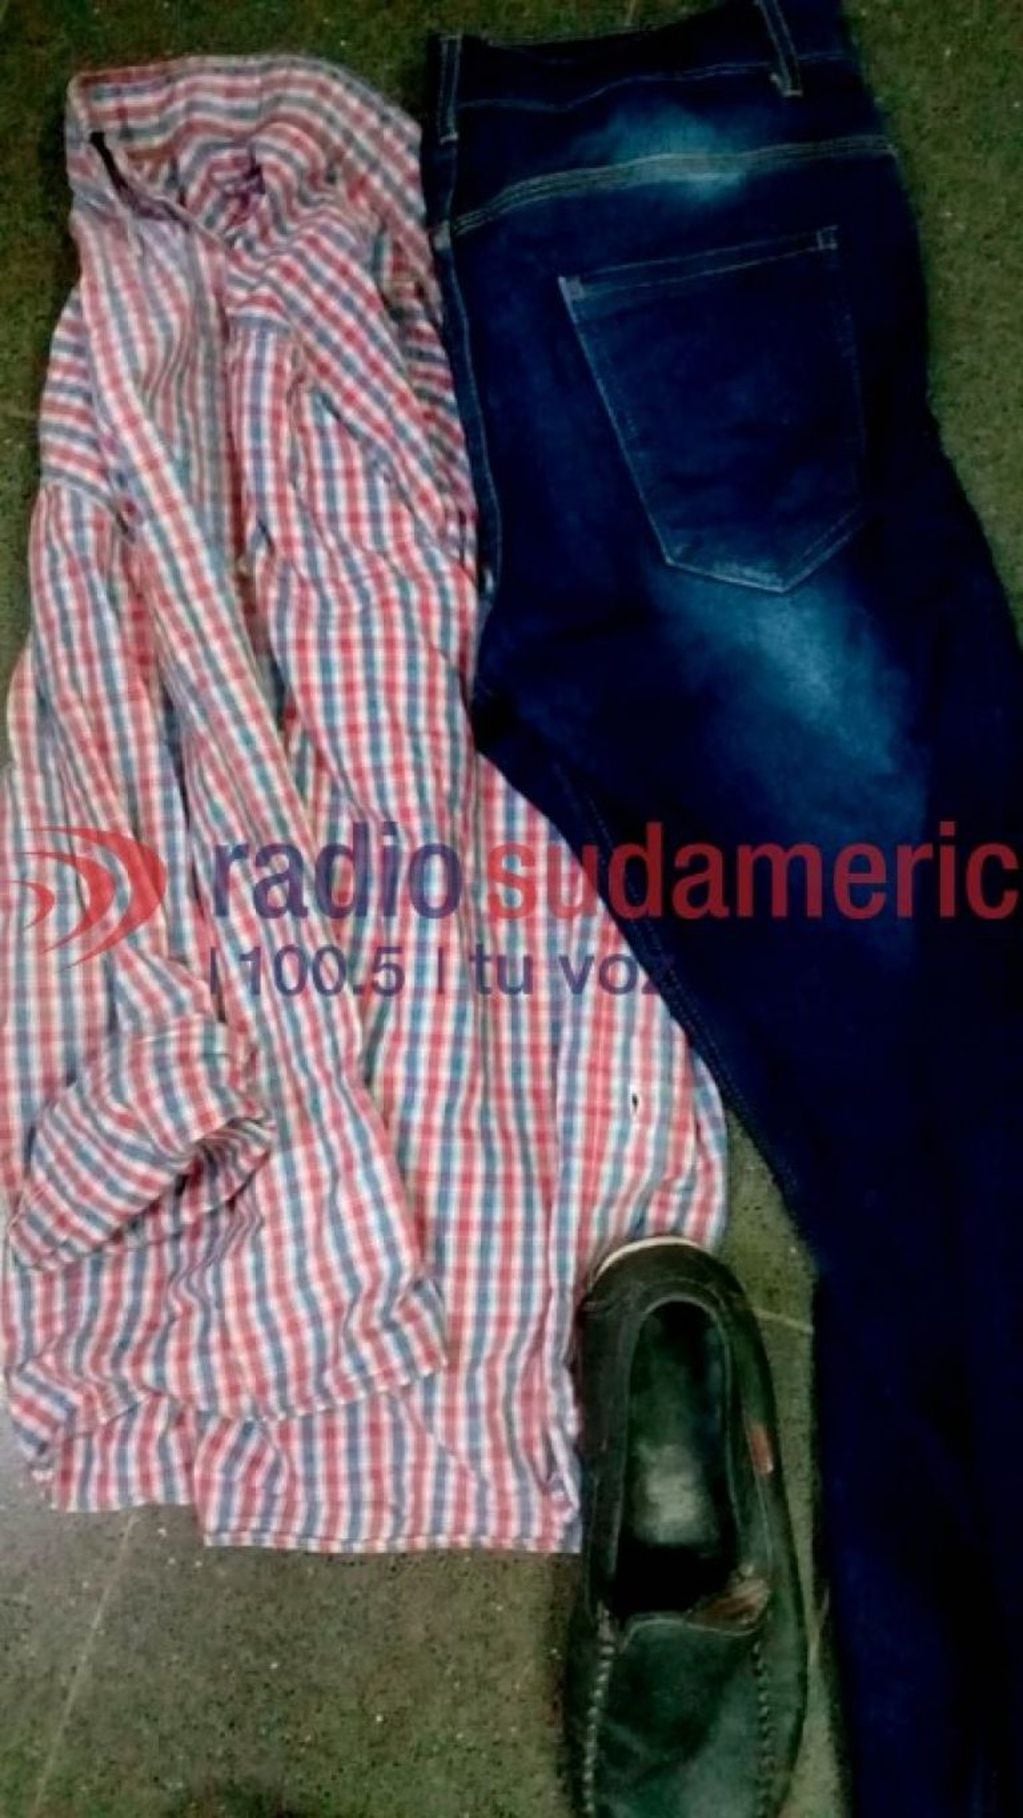 La ropa que llevaba puesta (Radio Sudamericana).